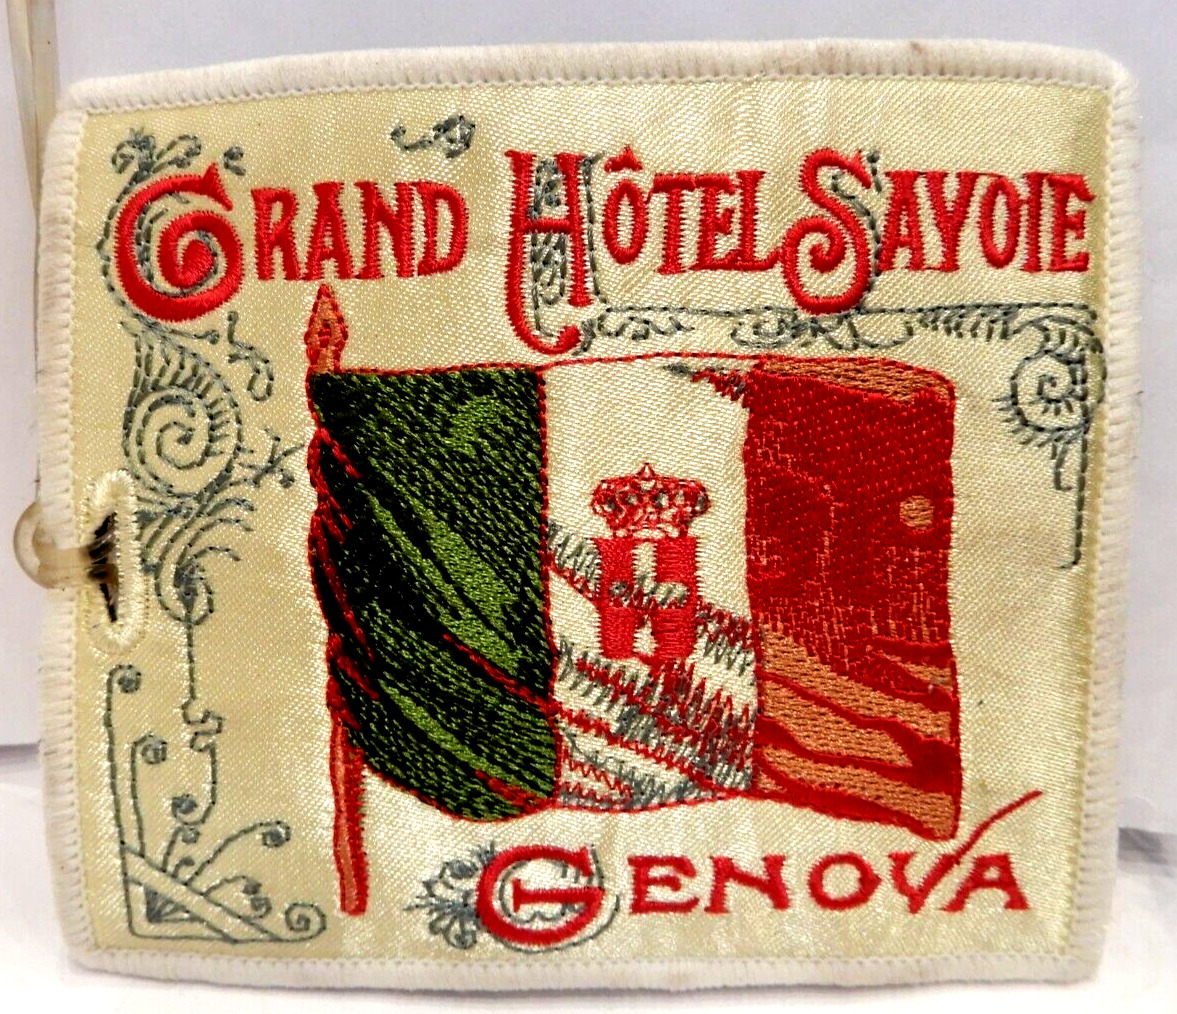 Vintage GRAND HOTEL SAVOIE GENOVA ITALY Luggage Tag Label PATCH Key Holder XONEX